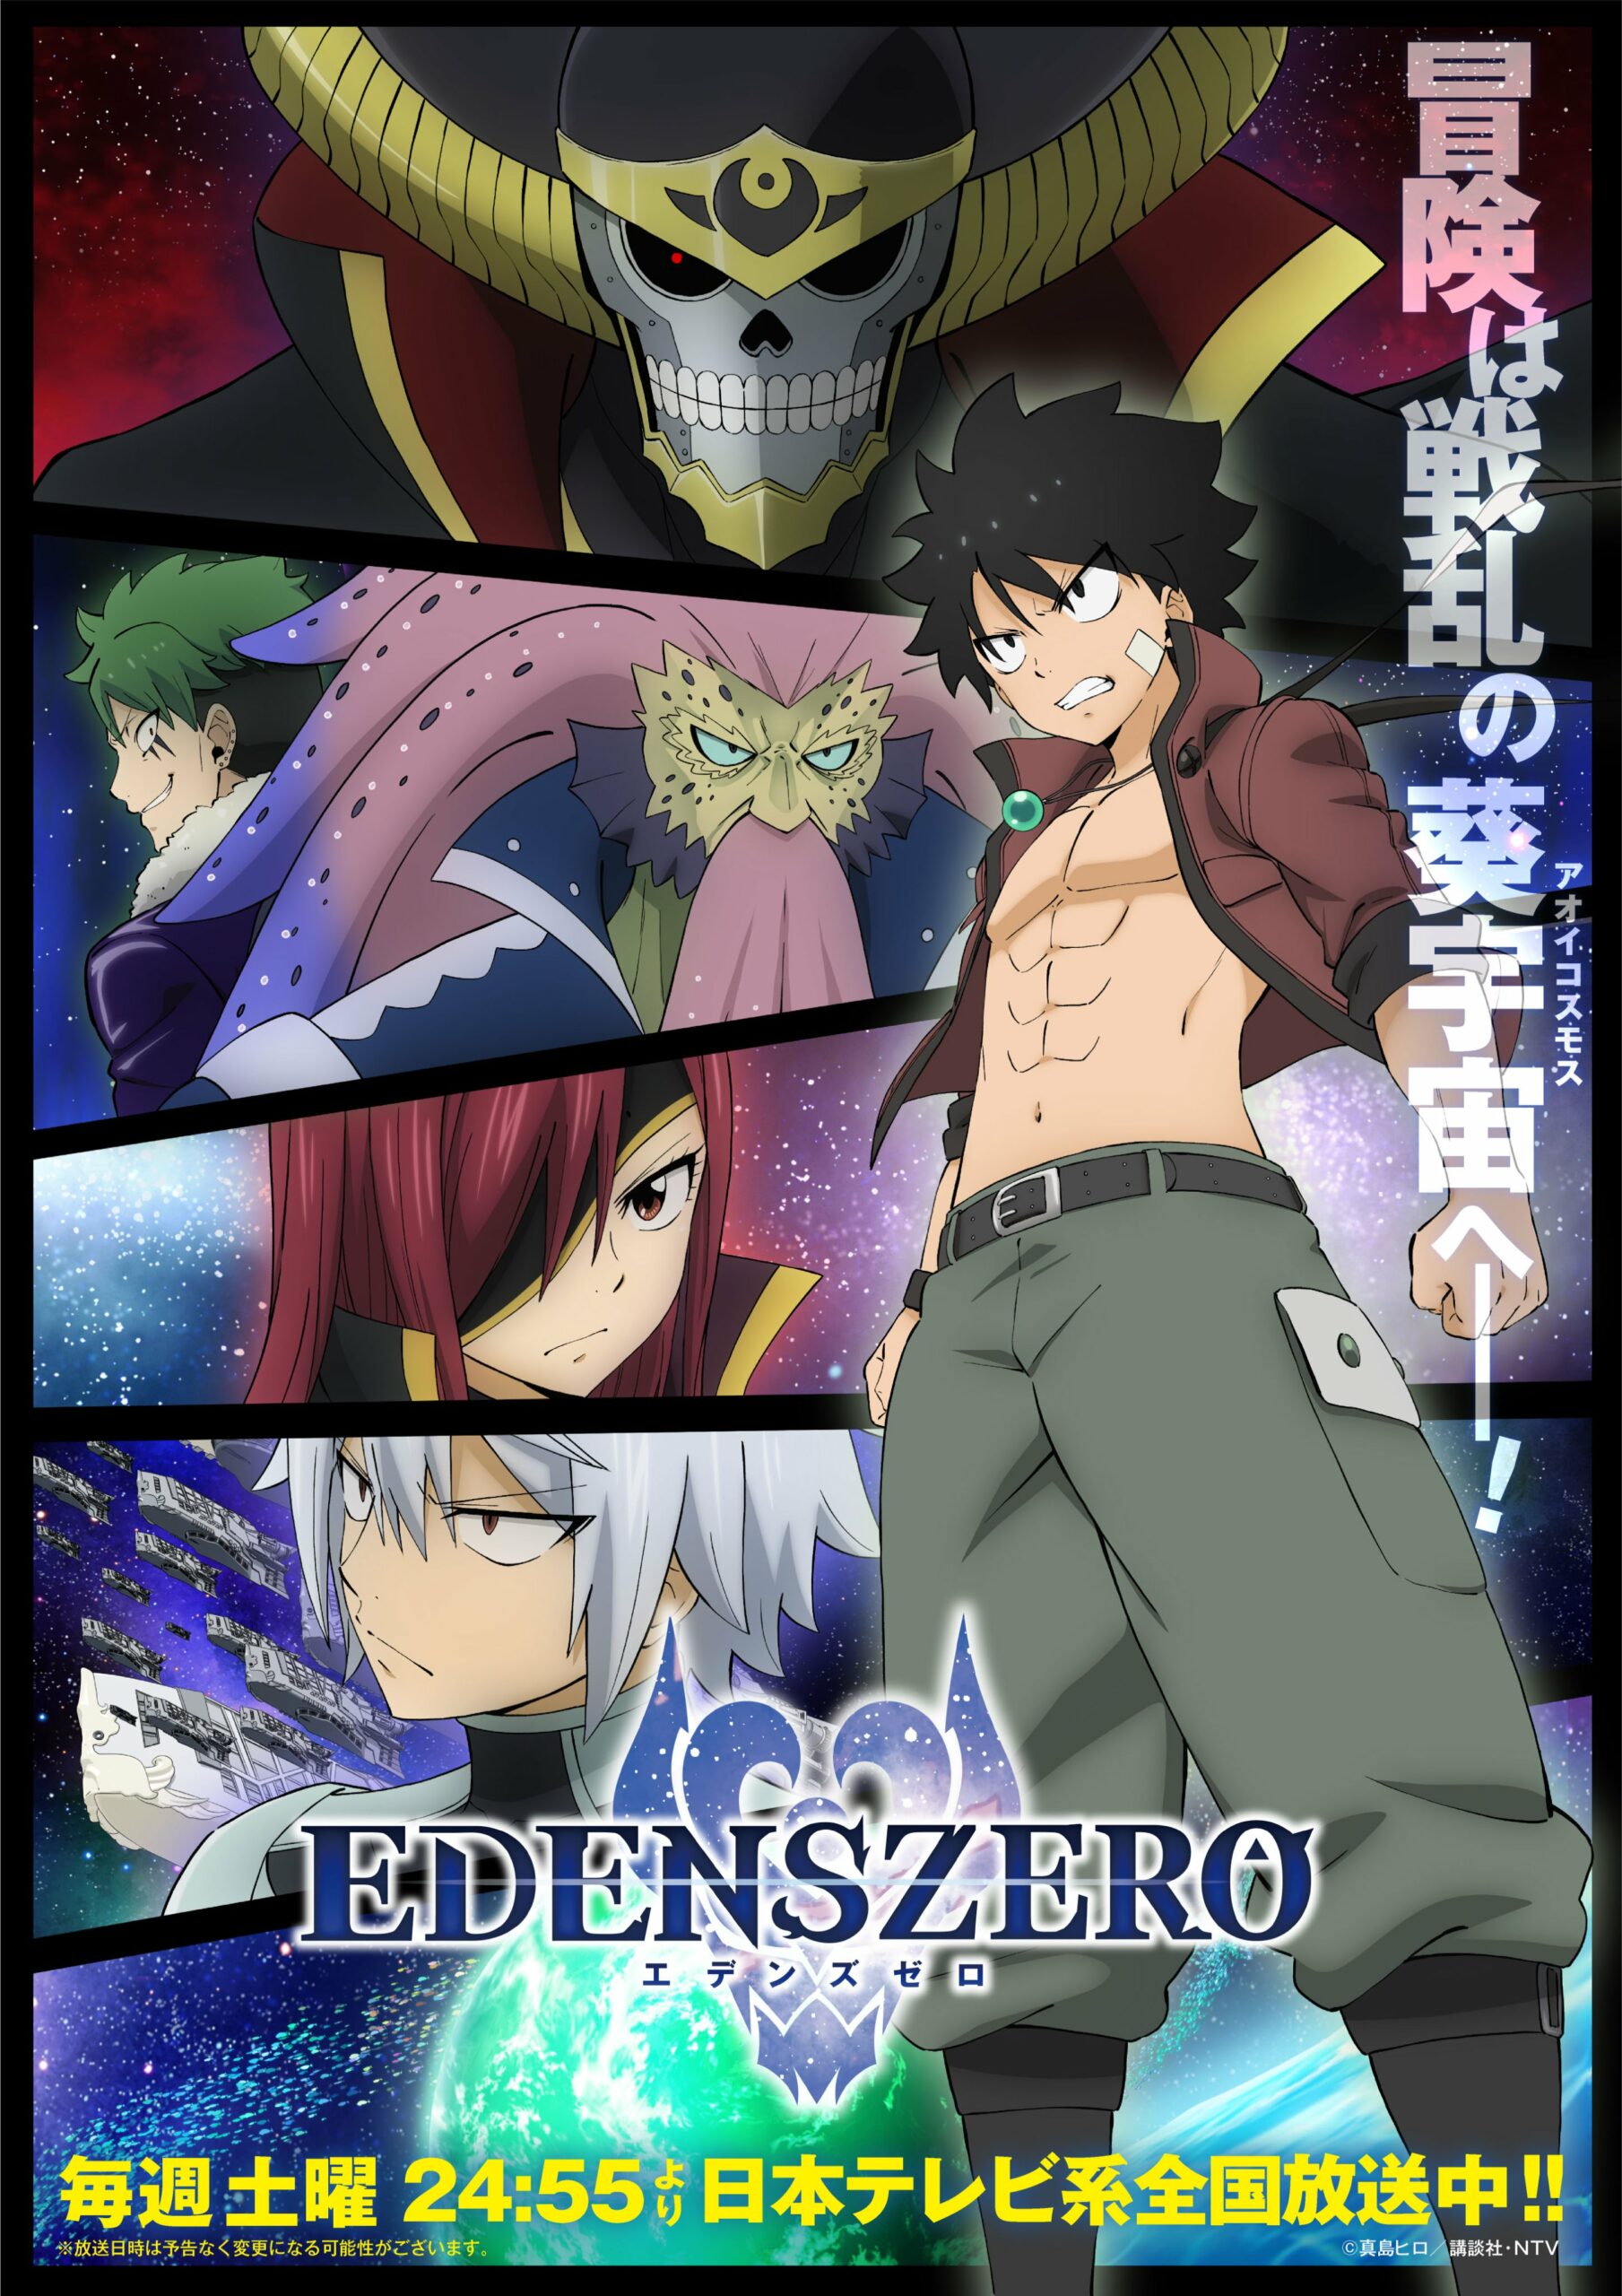 Edens Zero Season 2 key visual